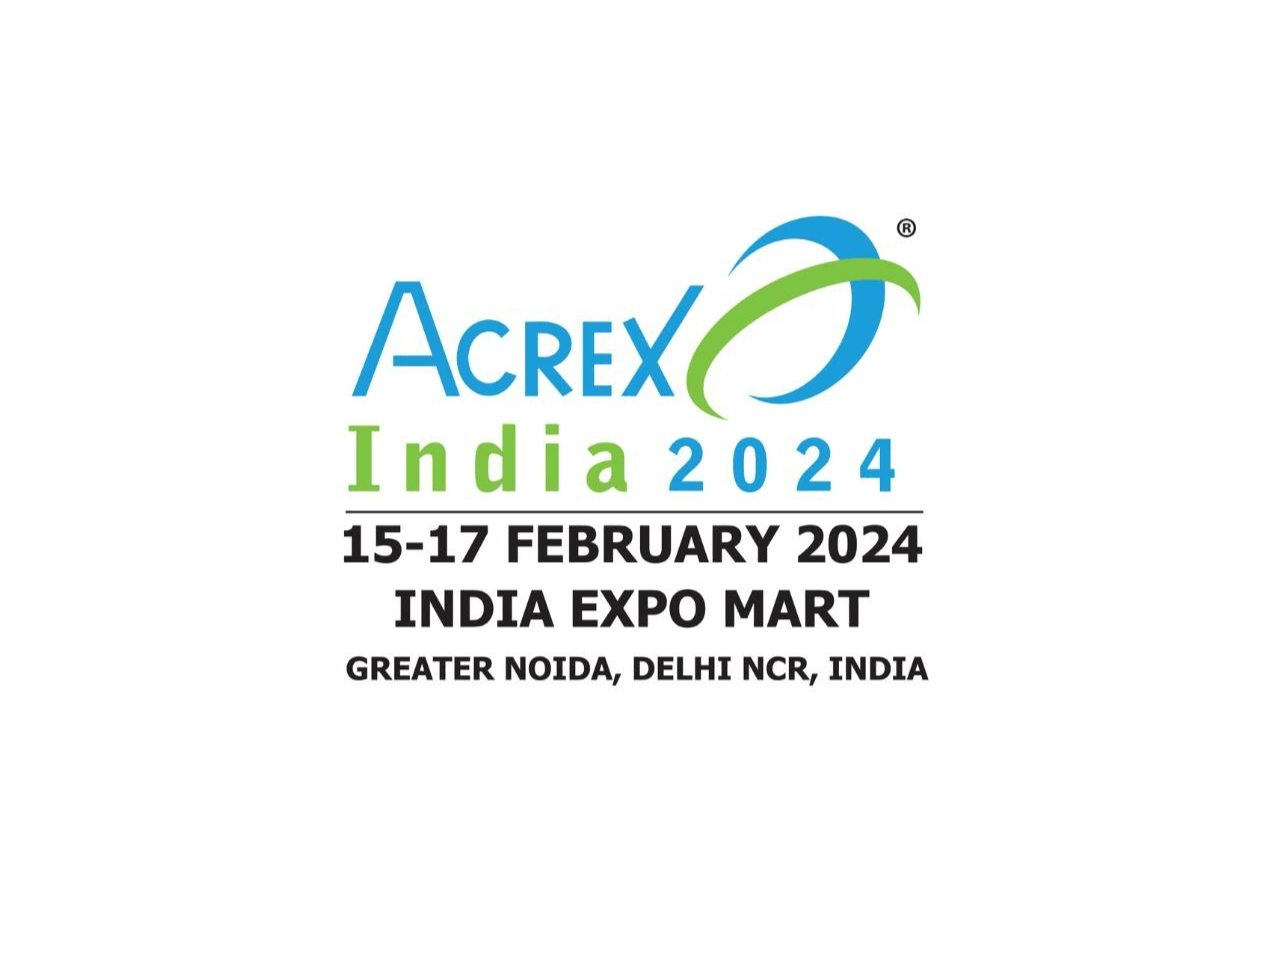 acrex-india-2024-interior-today